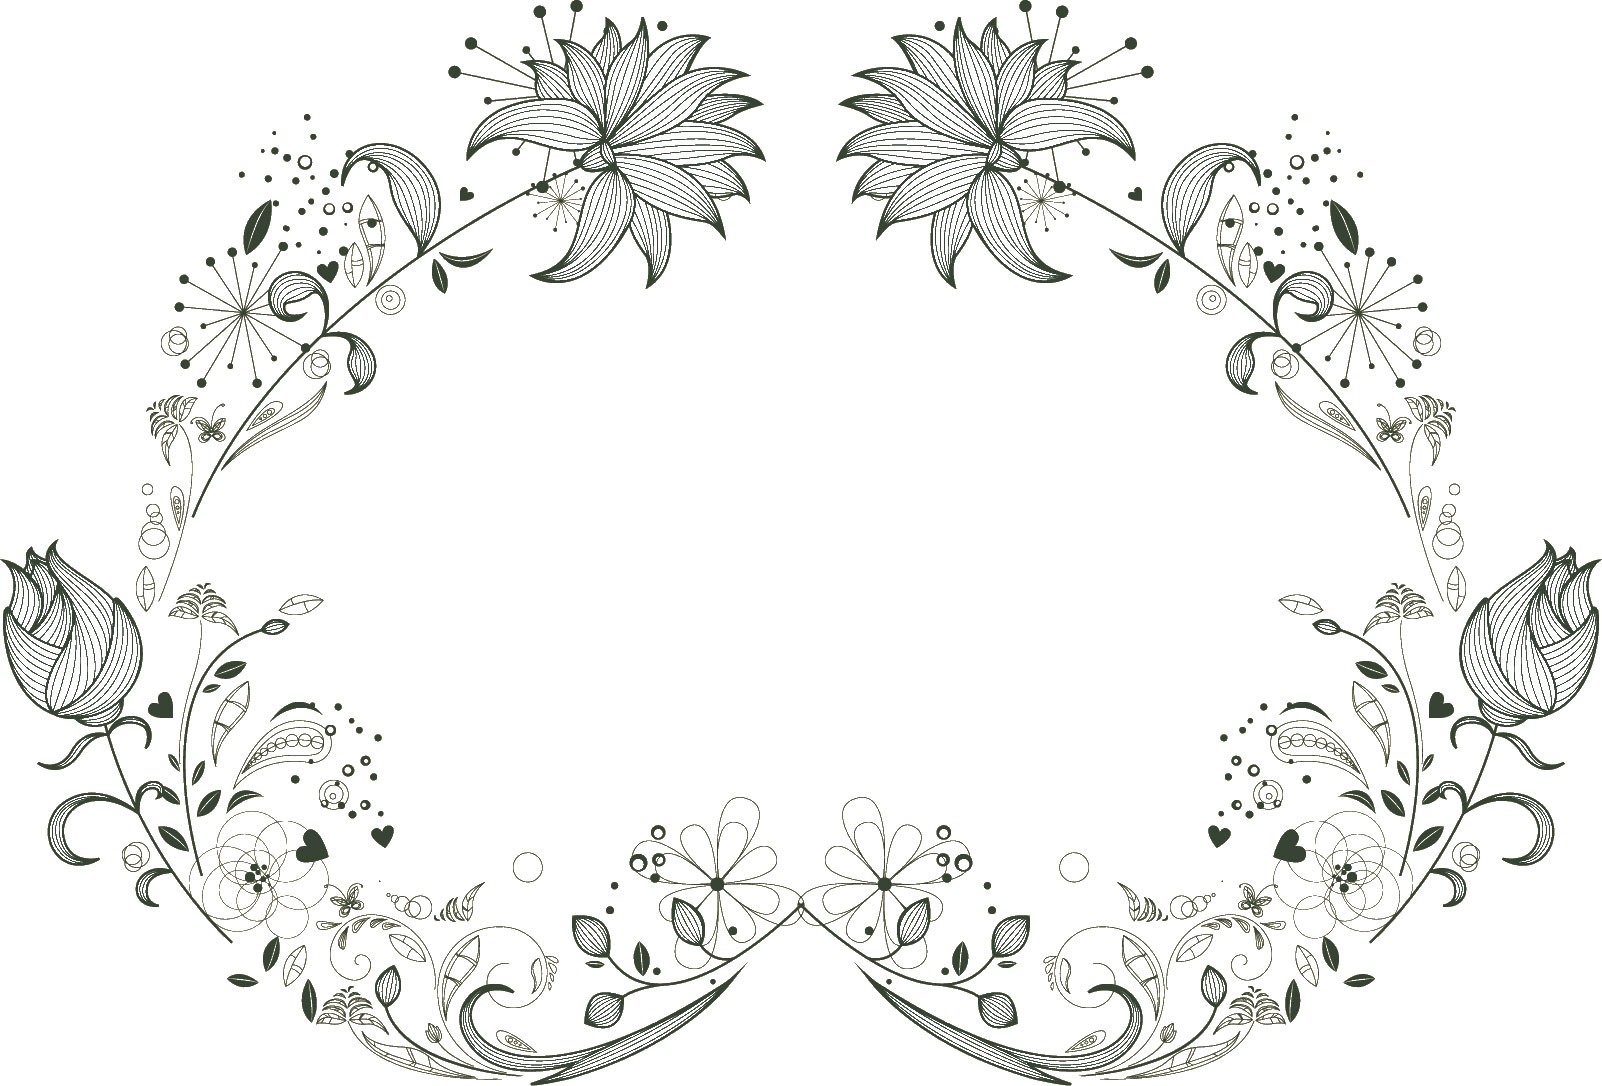 白黒 モノクロの花のイラスト フリー素材 フレーム枠no 787 細い線画３